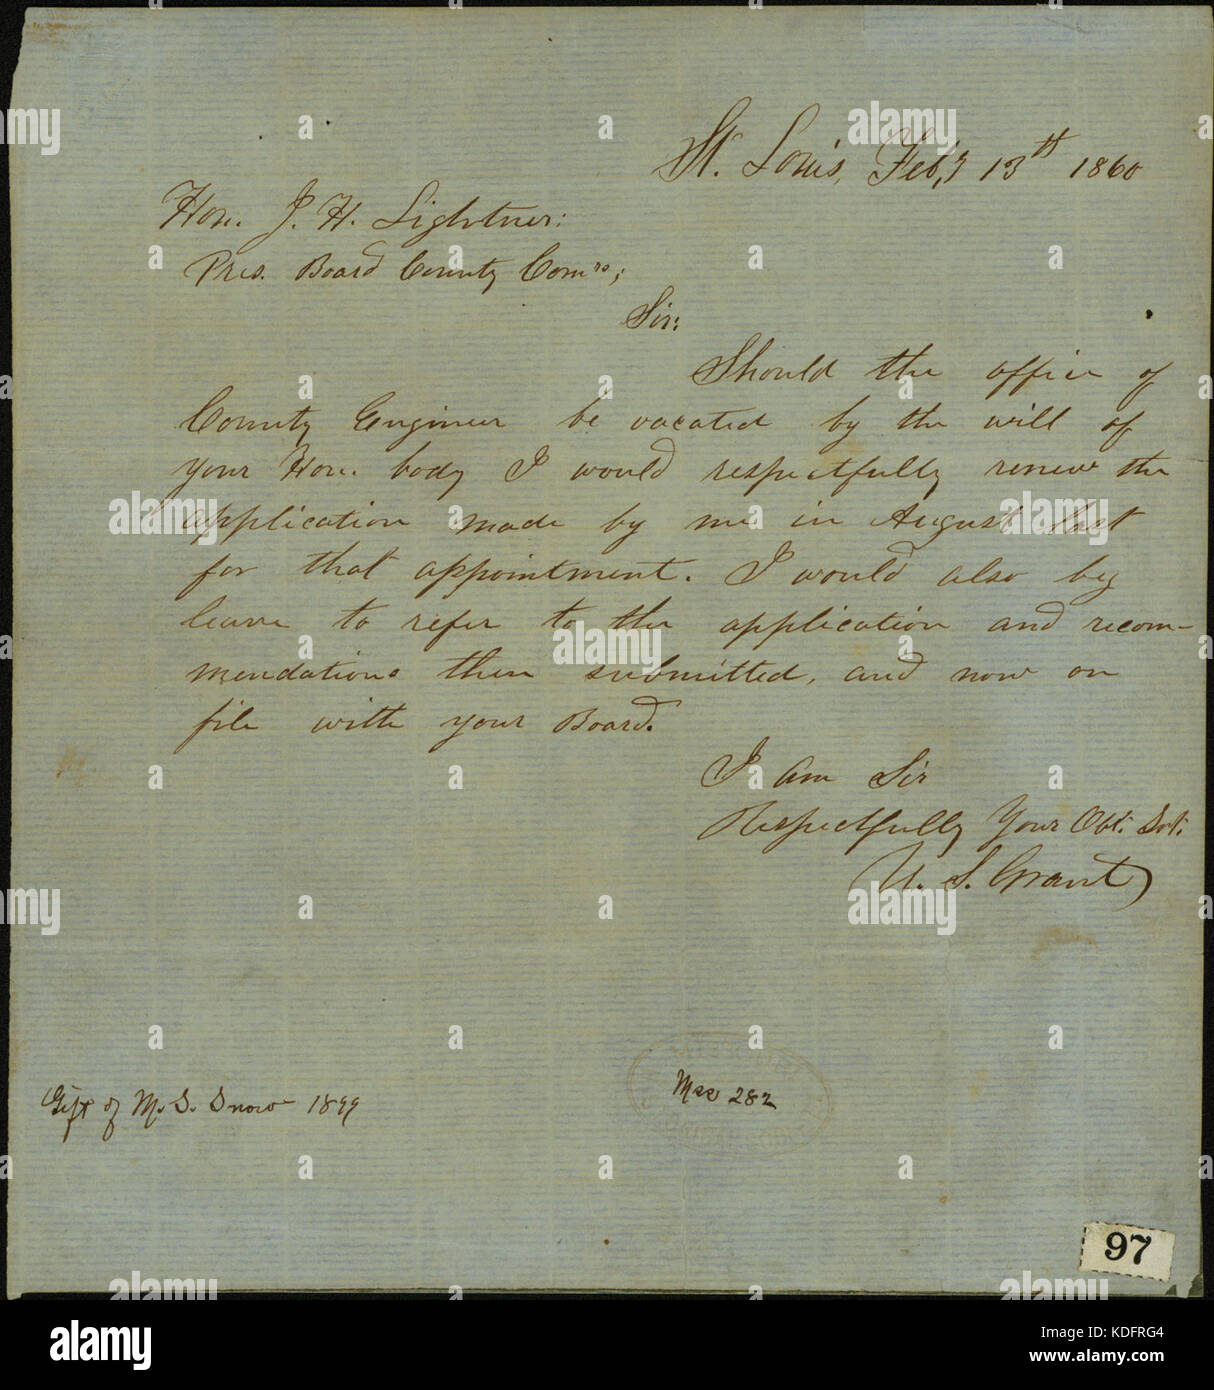 Letter signed U.S. Grant, St. Louis, to Hon. J.H. Lightner, February 13, 1860 Stock Photo